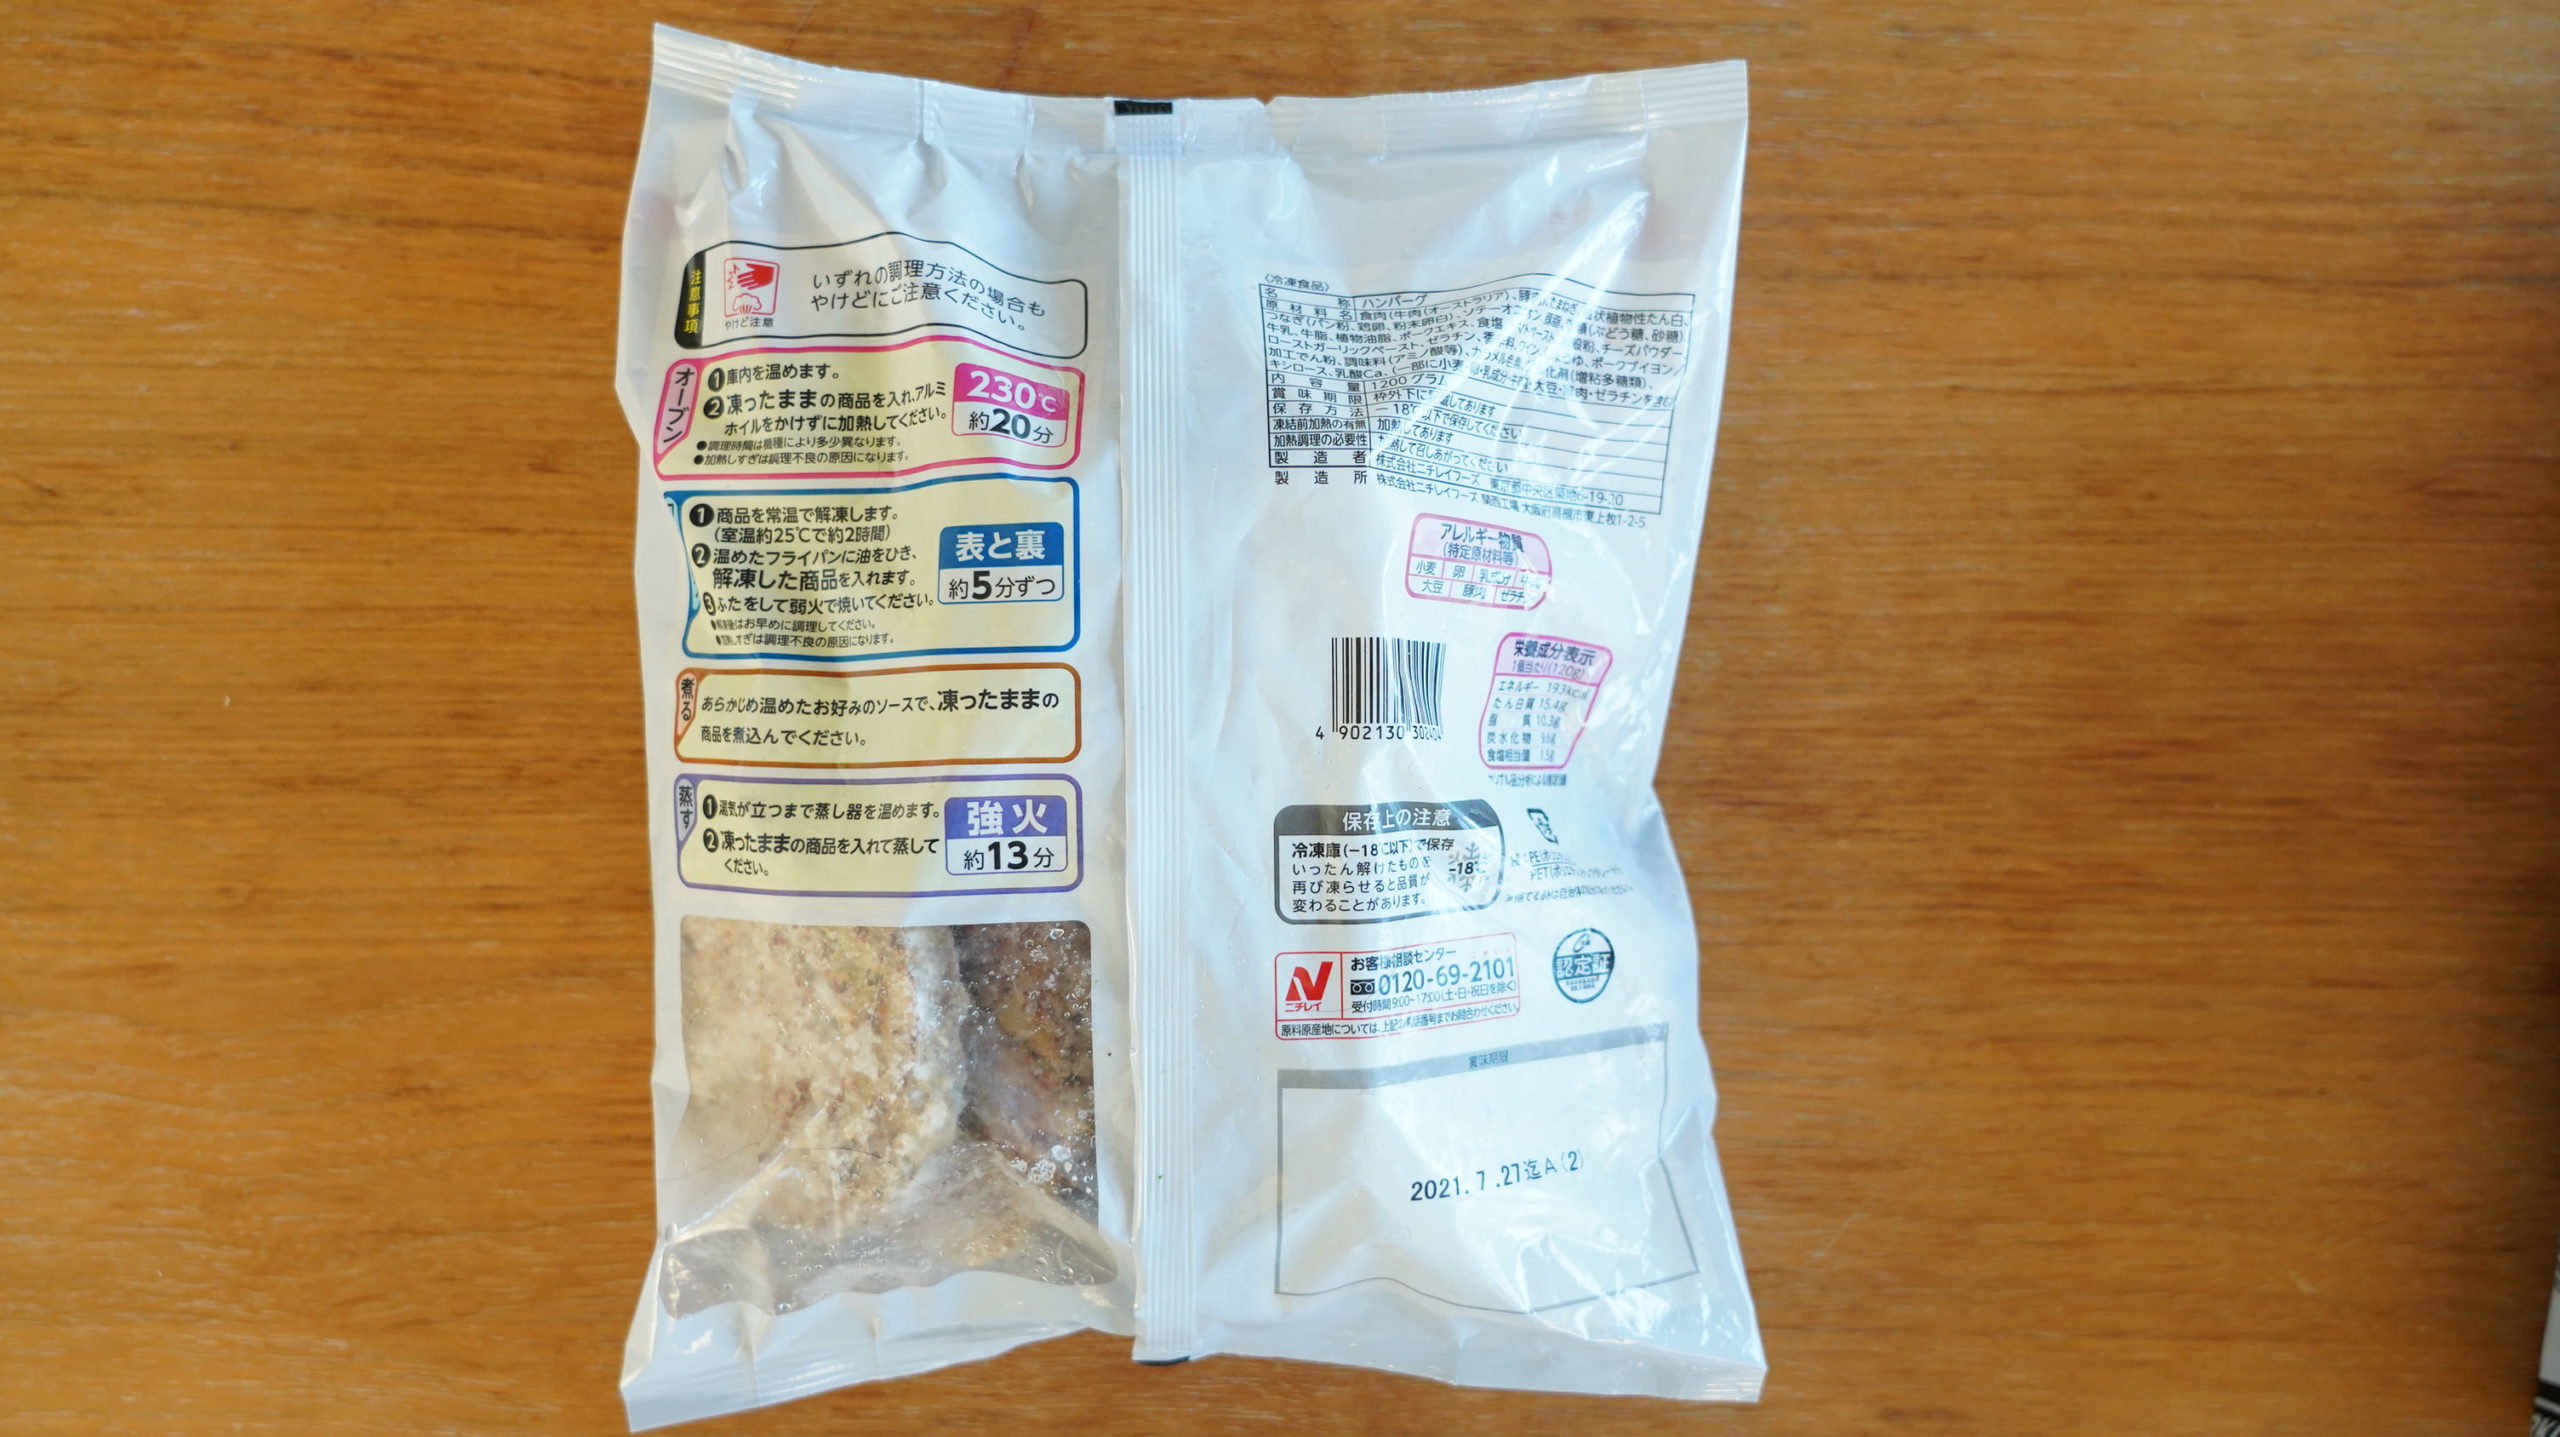 コストコの冷凍食品「香ばしグリエ・ハンバーグ」のパッケージ裏面の写真